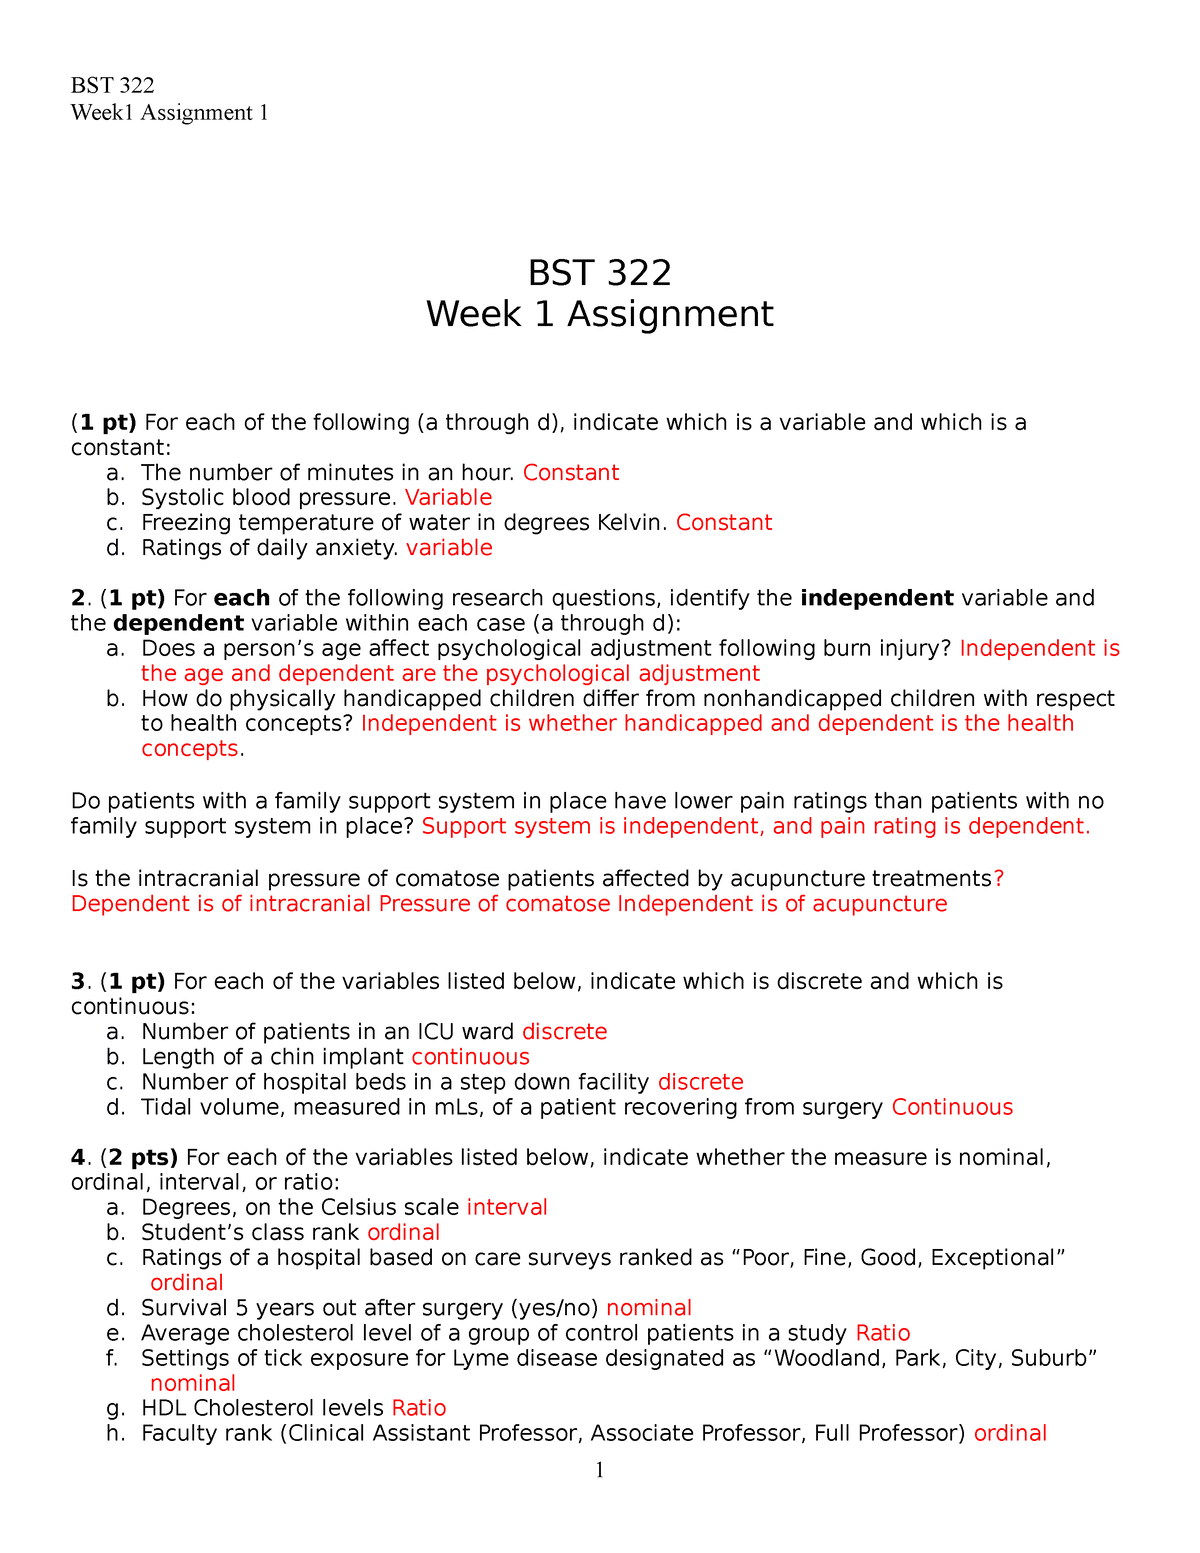 week 1 assignment bst 322